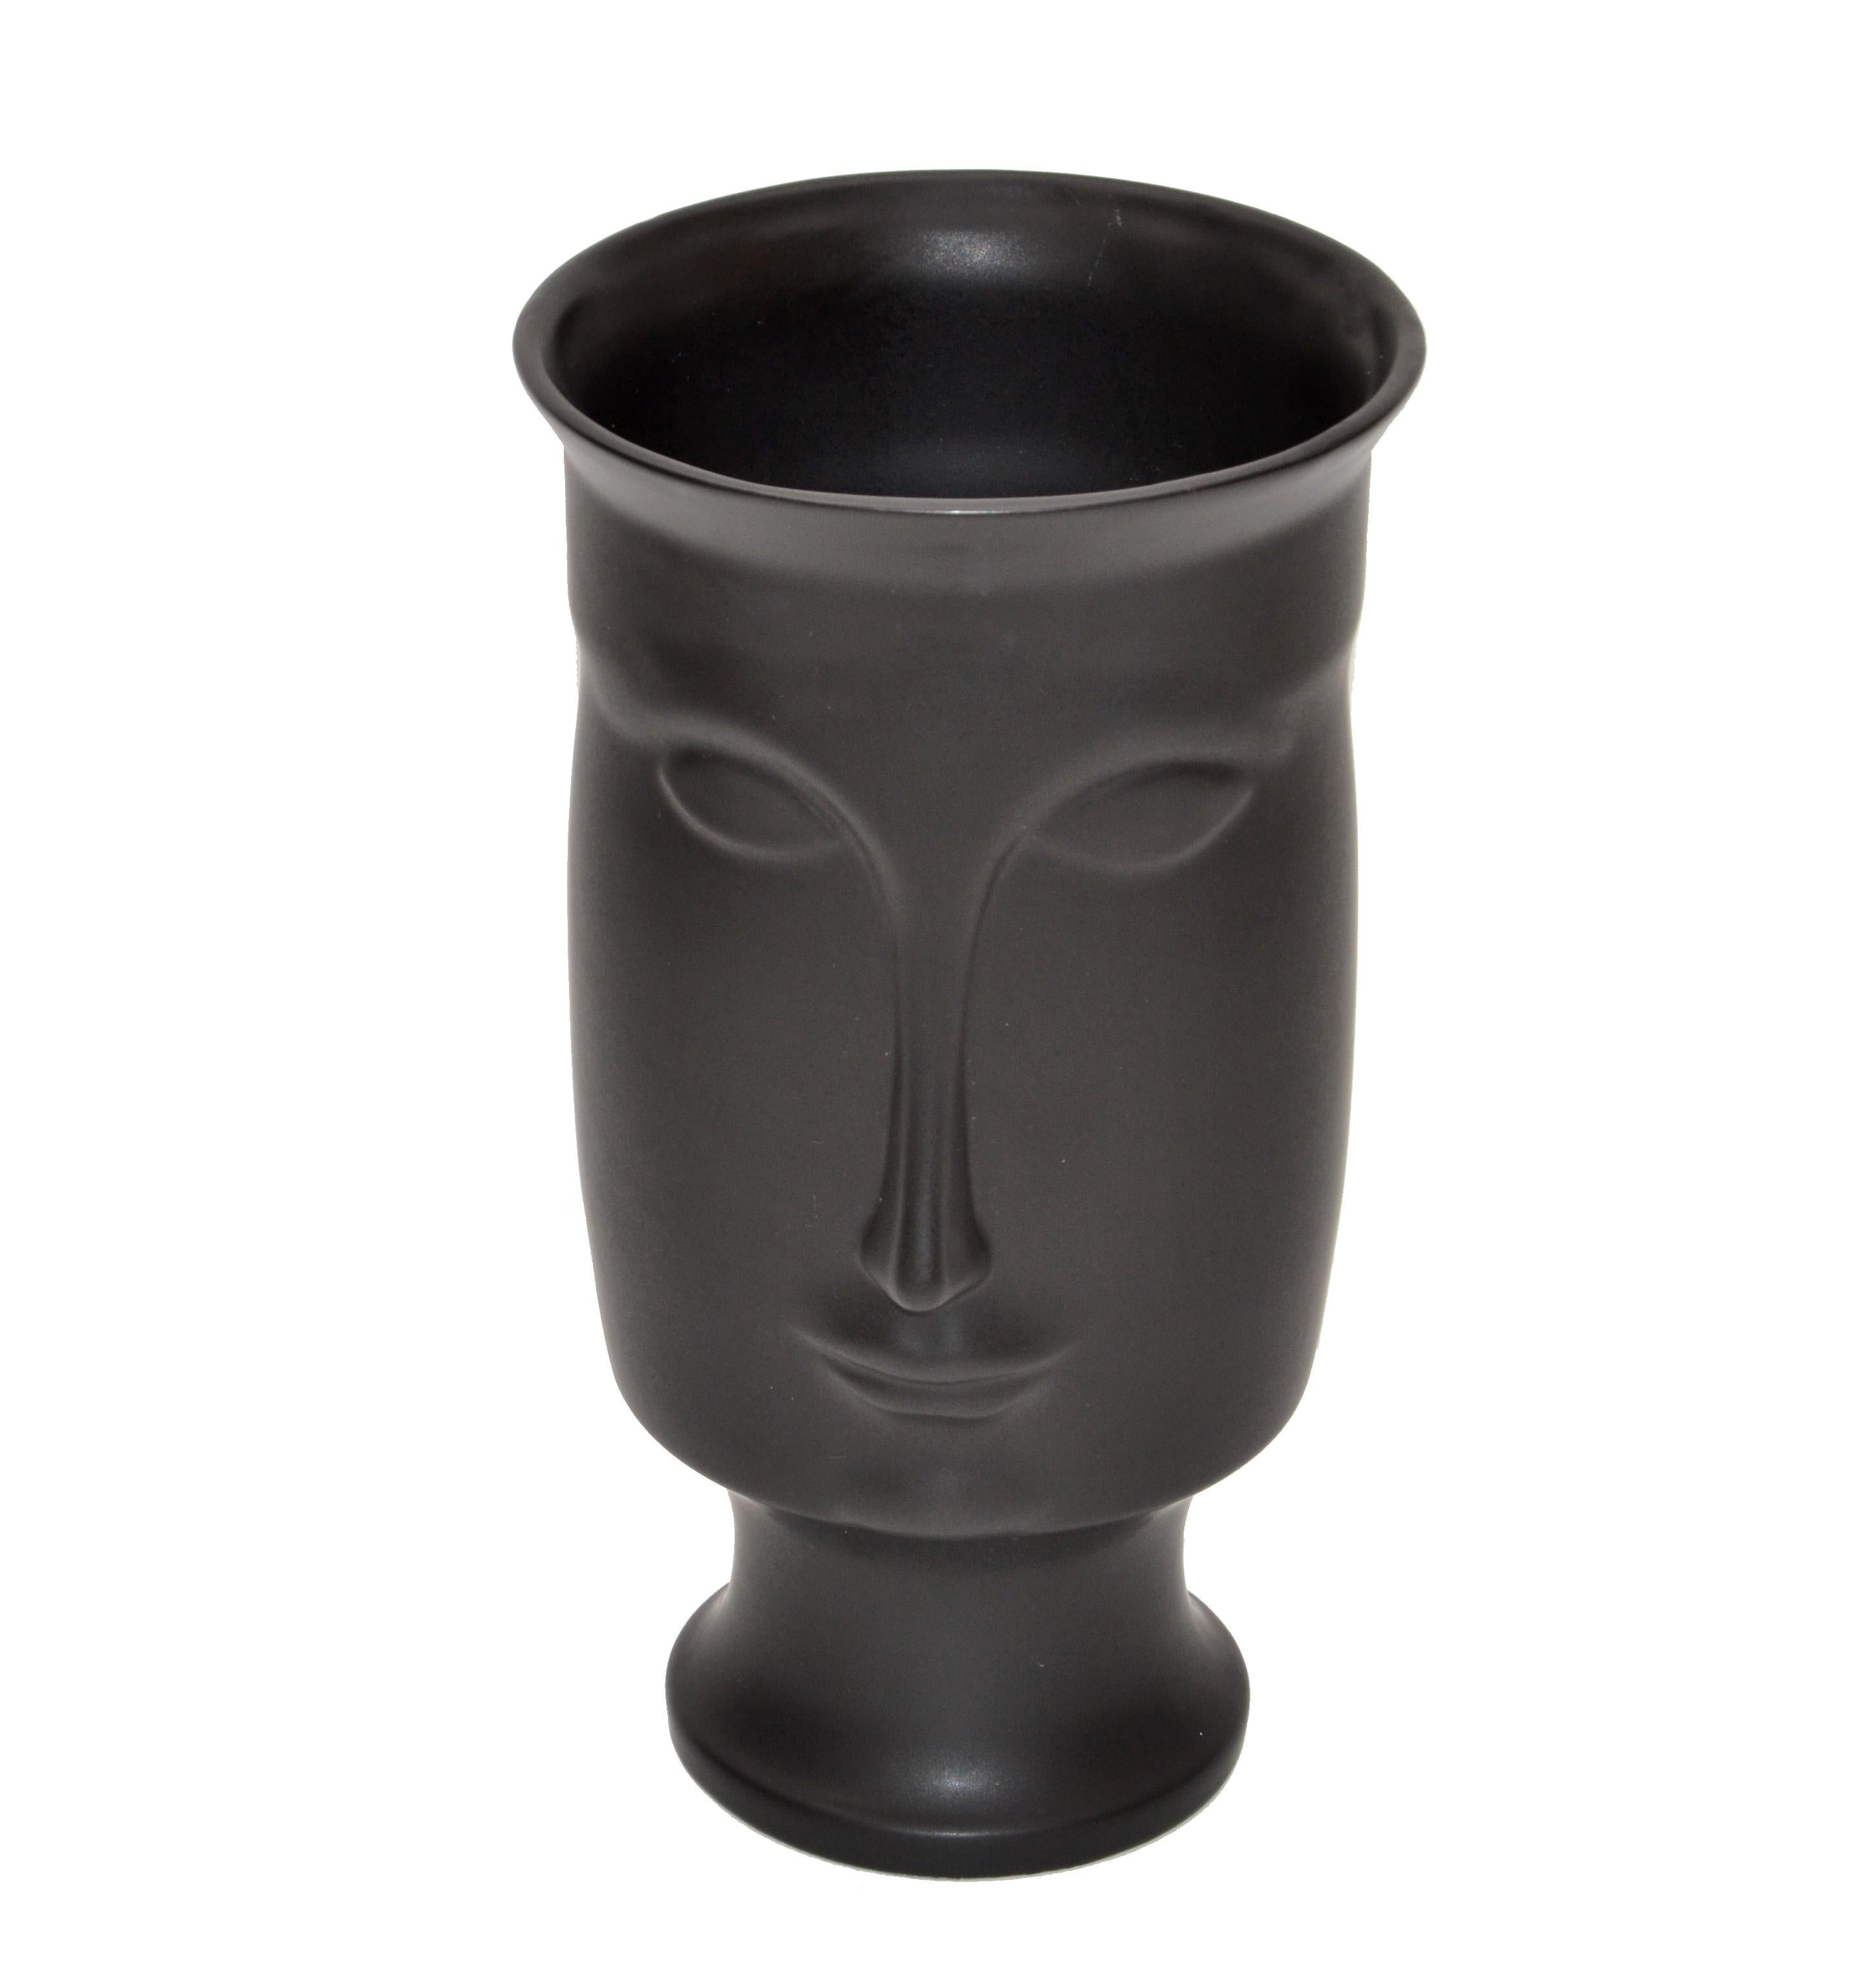 Mid-Century Modern schwarze Keramik Gesicht oder Kopf Vase.
Sieht von allen Seiten toll aus.
Studio Stück ohne Markierungen.